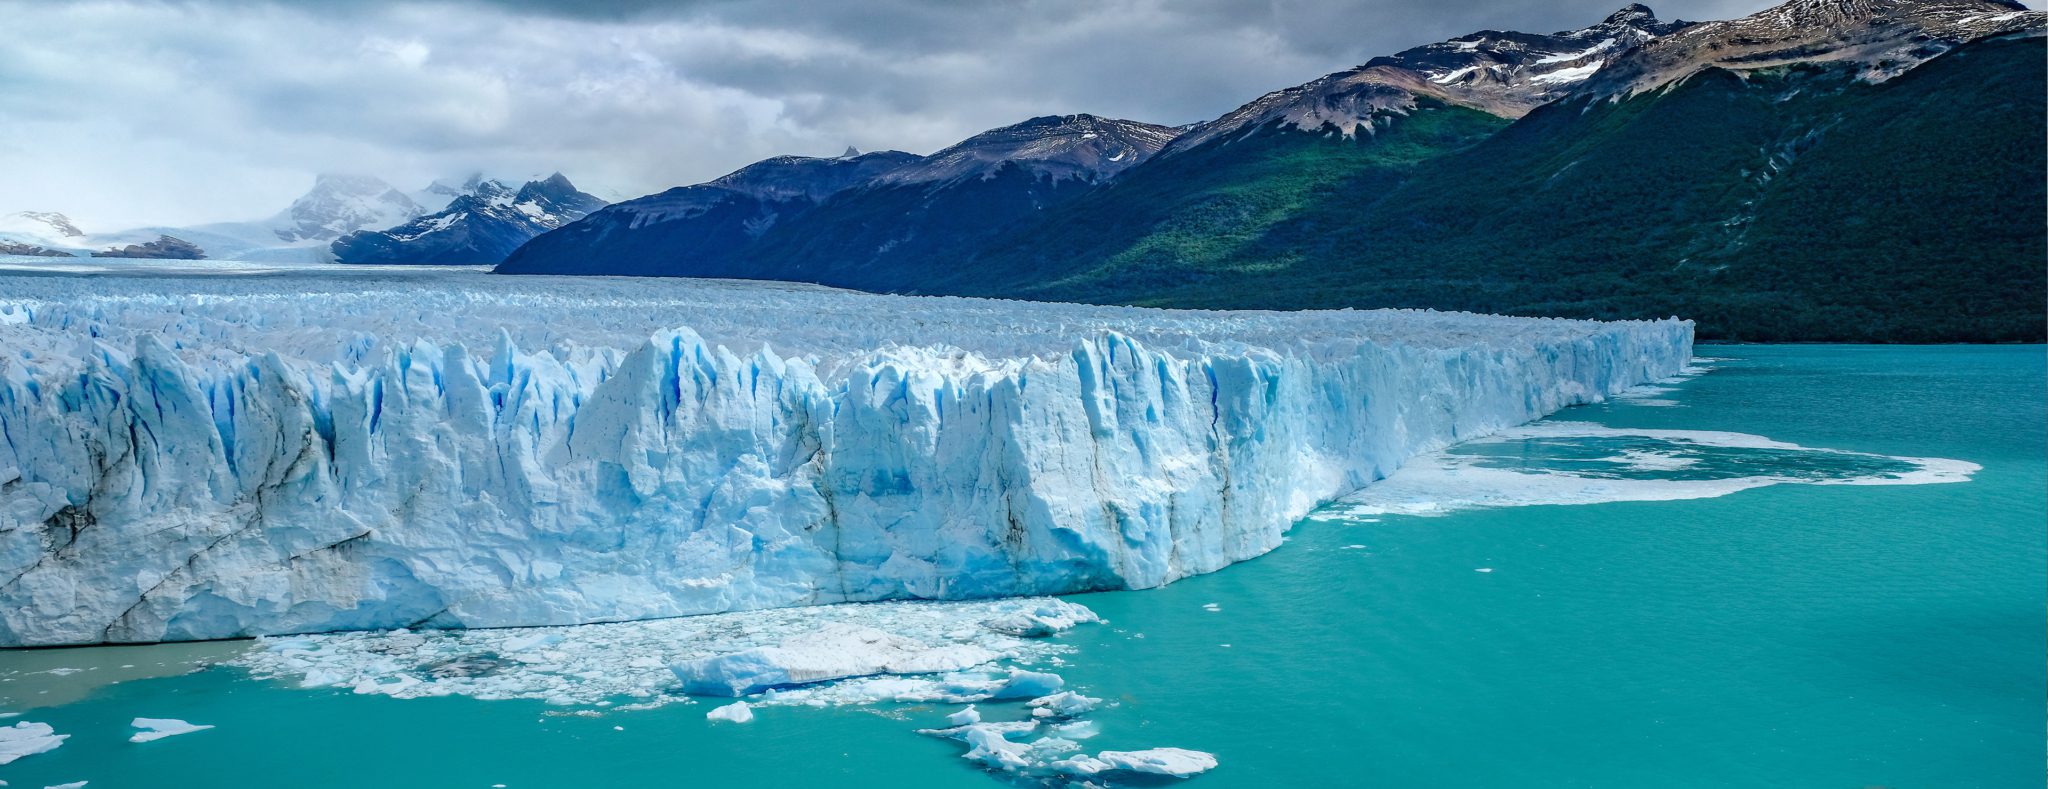 Los Glaciares Nationaal park, Argentinië